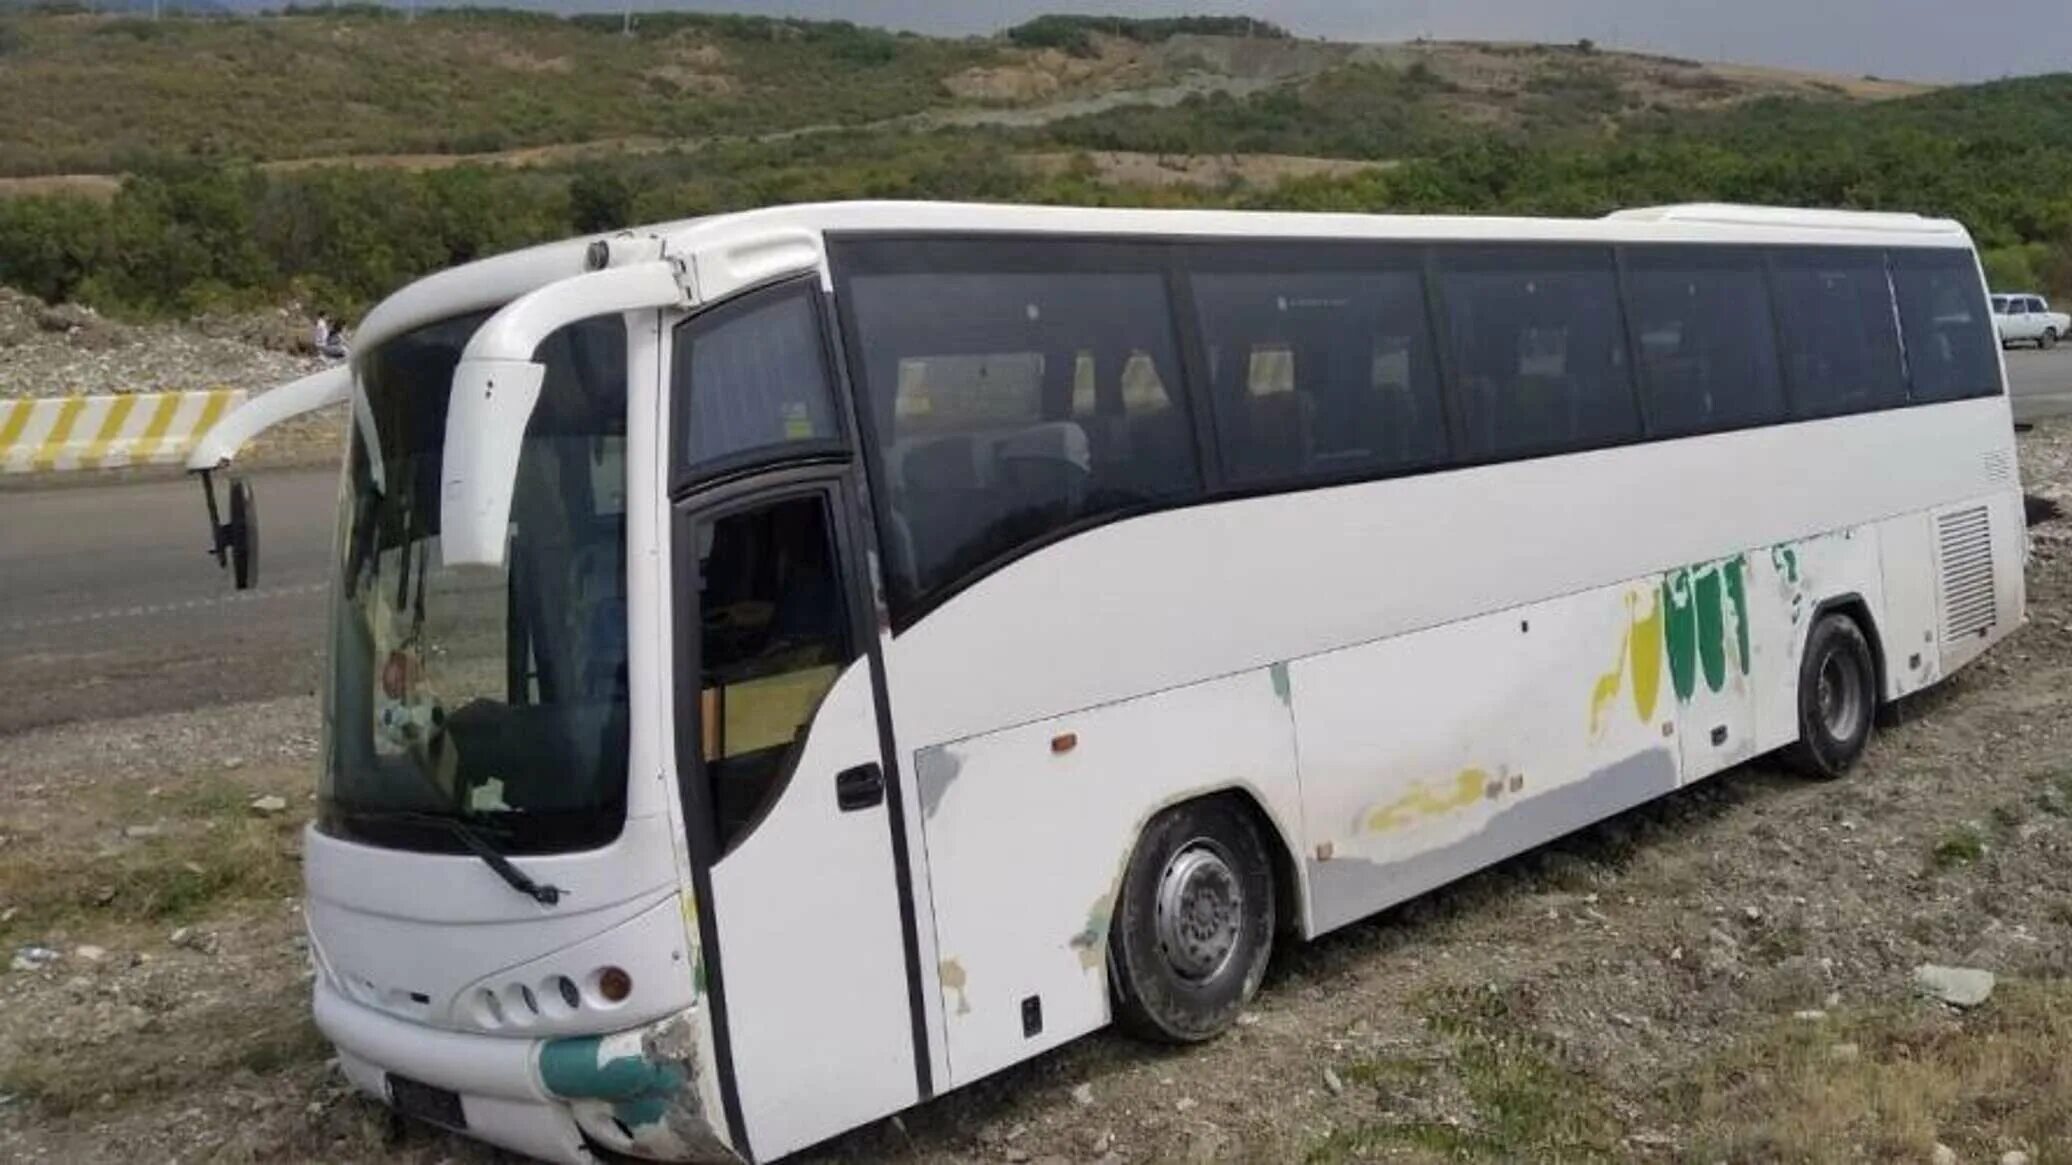 Спутник автобусные туры. Новые автобусы. Типы автобусов для туристов. Грузинскй автобус. Опасные автобусы в турах.